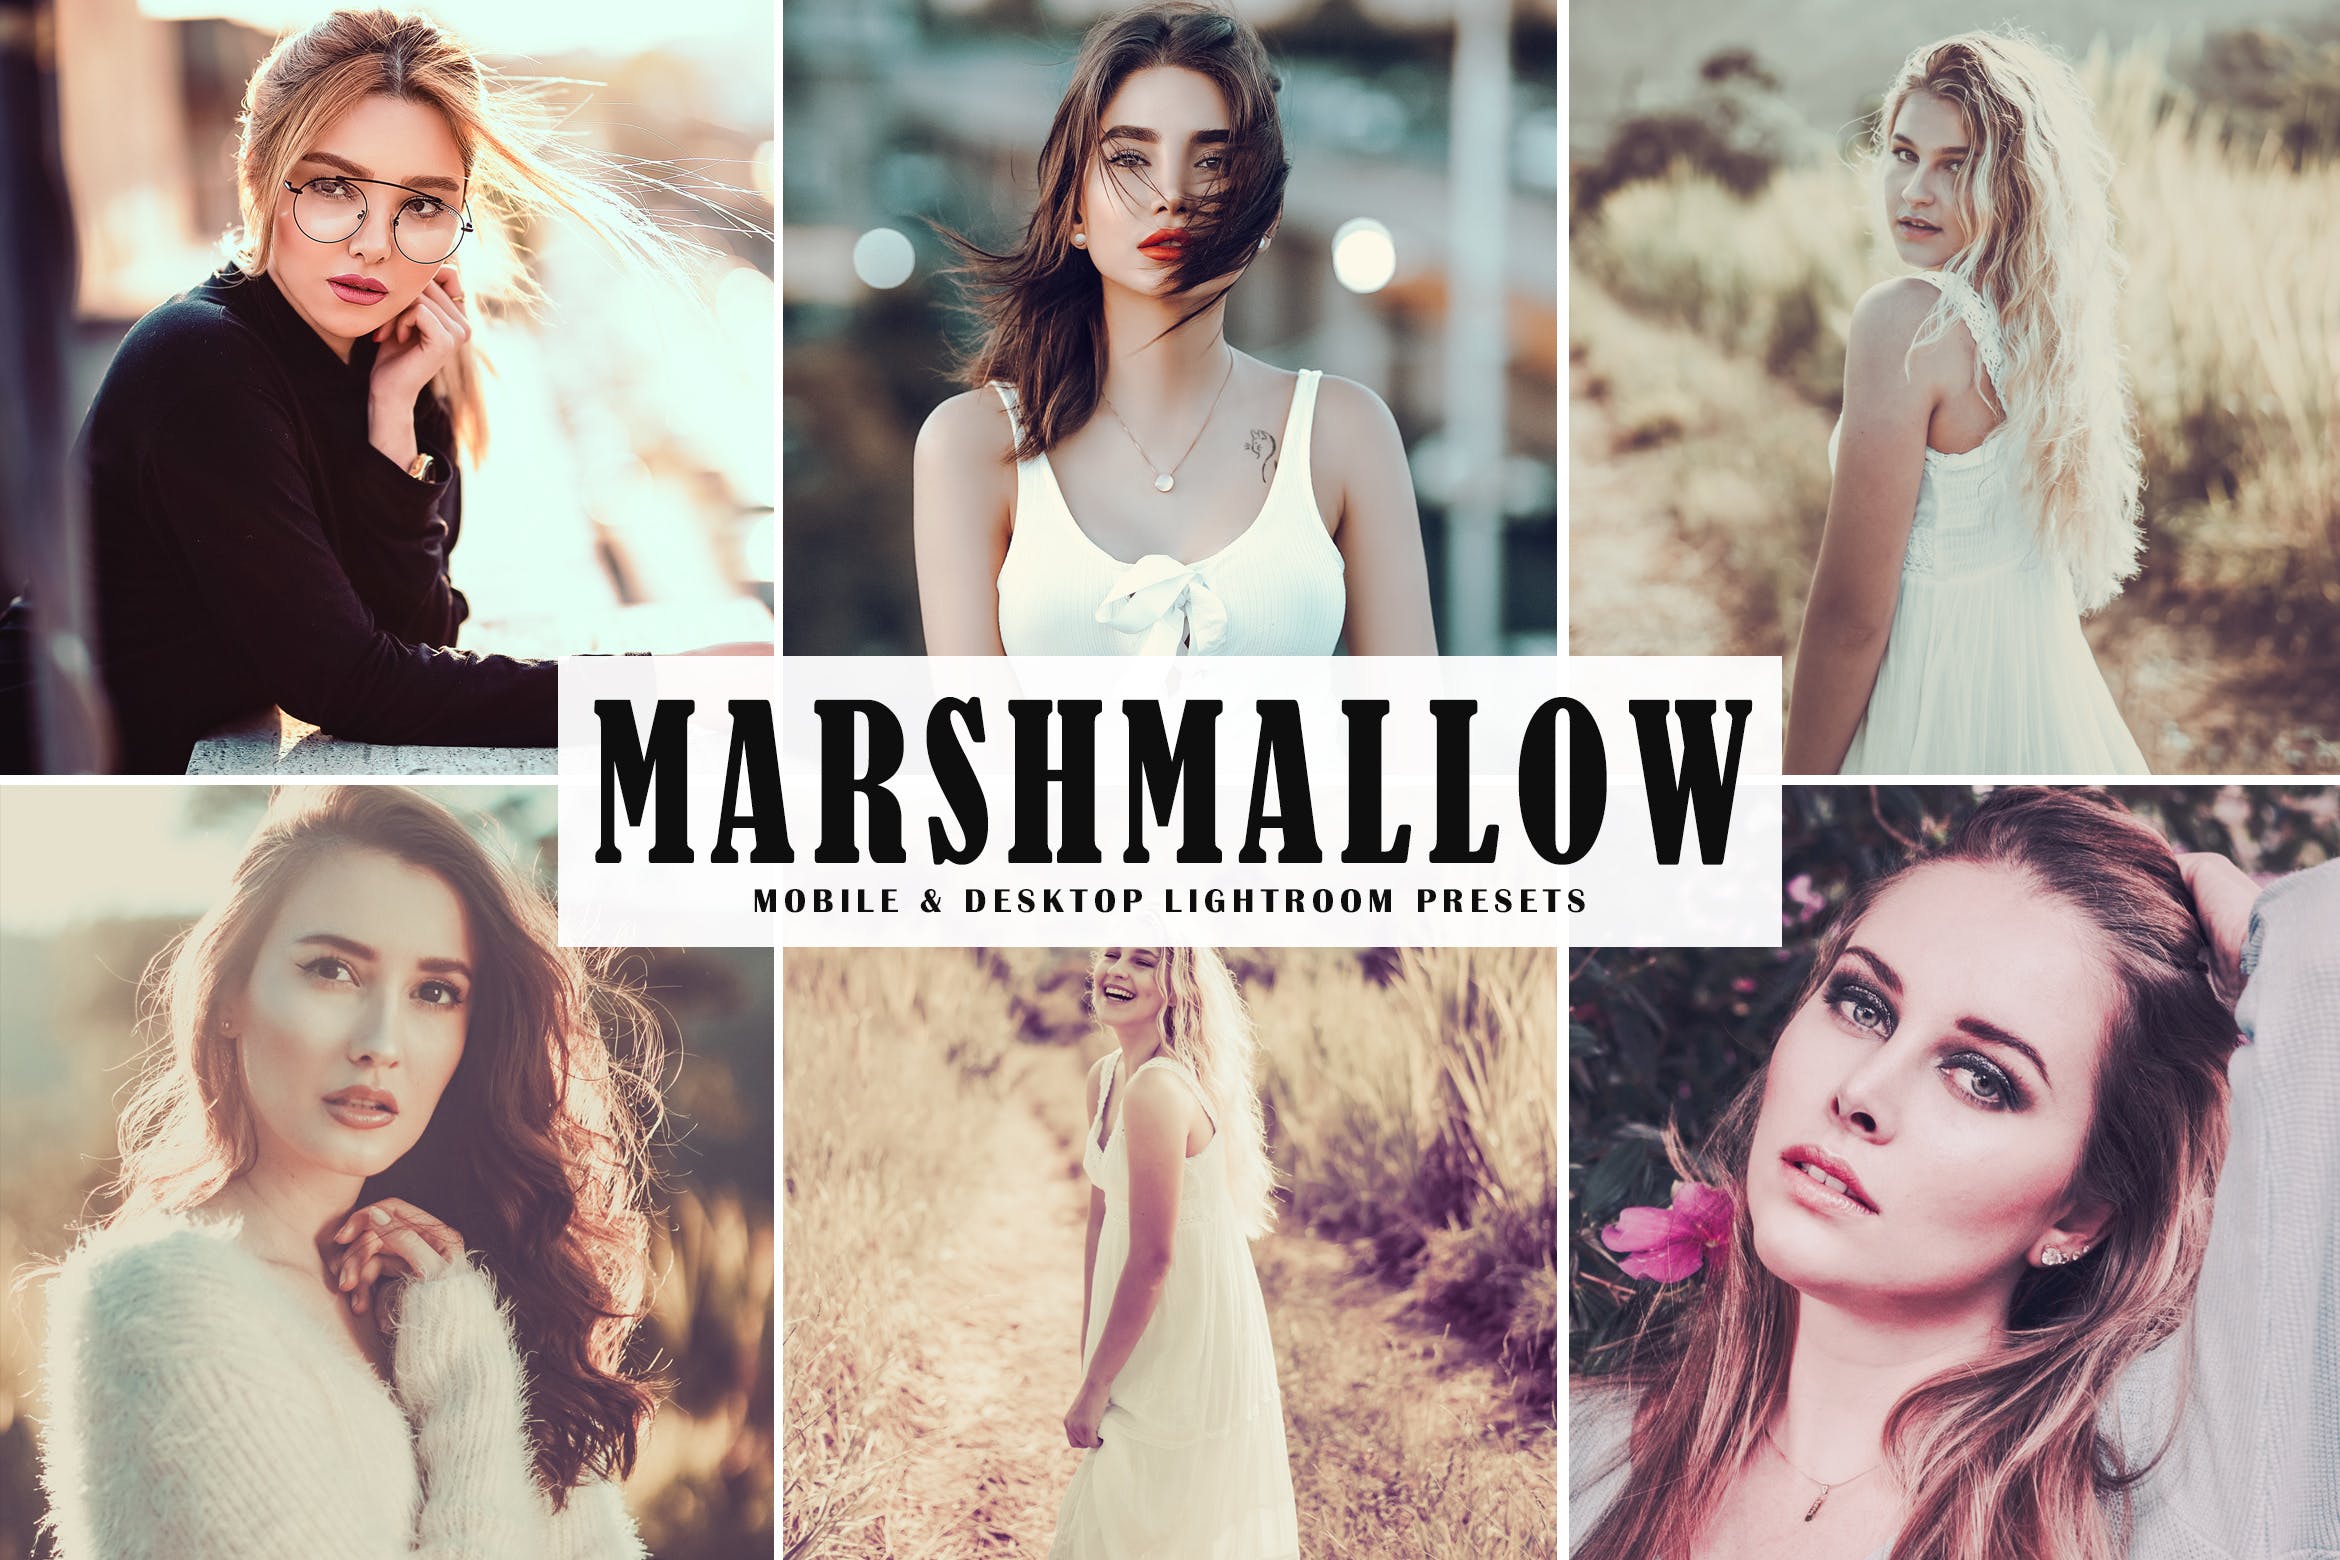 时尚女性摄影照片调色滤镜大洋岛精选LR预设 Marshmallow Mobile & Desktop Lightroom Presets插图